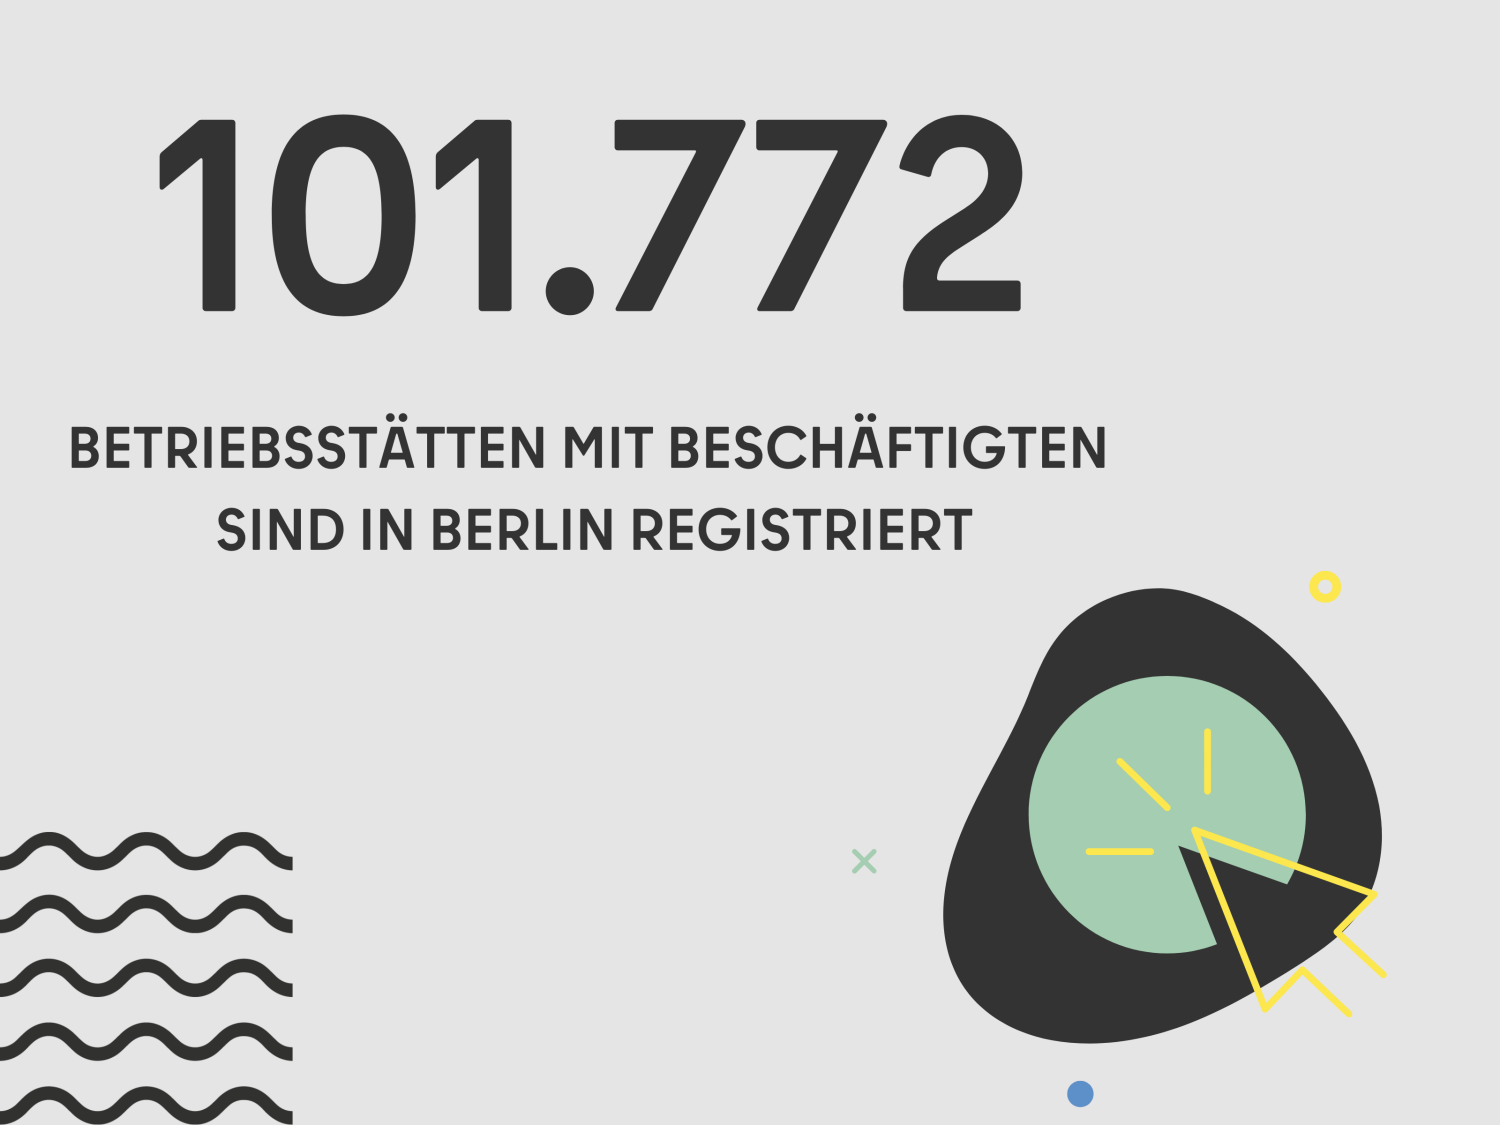 101.772 BETRIEBSSTÄTTEN MIT BESCHÄFTIGTEN SIND IN BERLIN REGISTRIERT